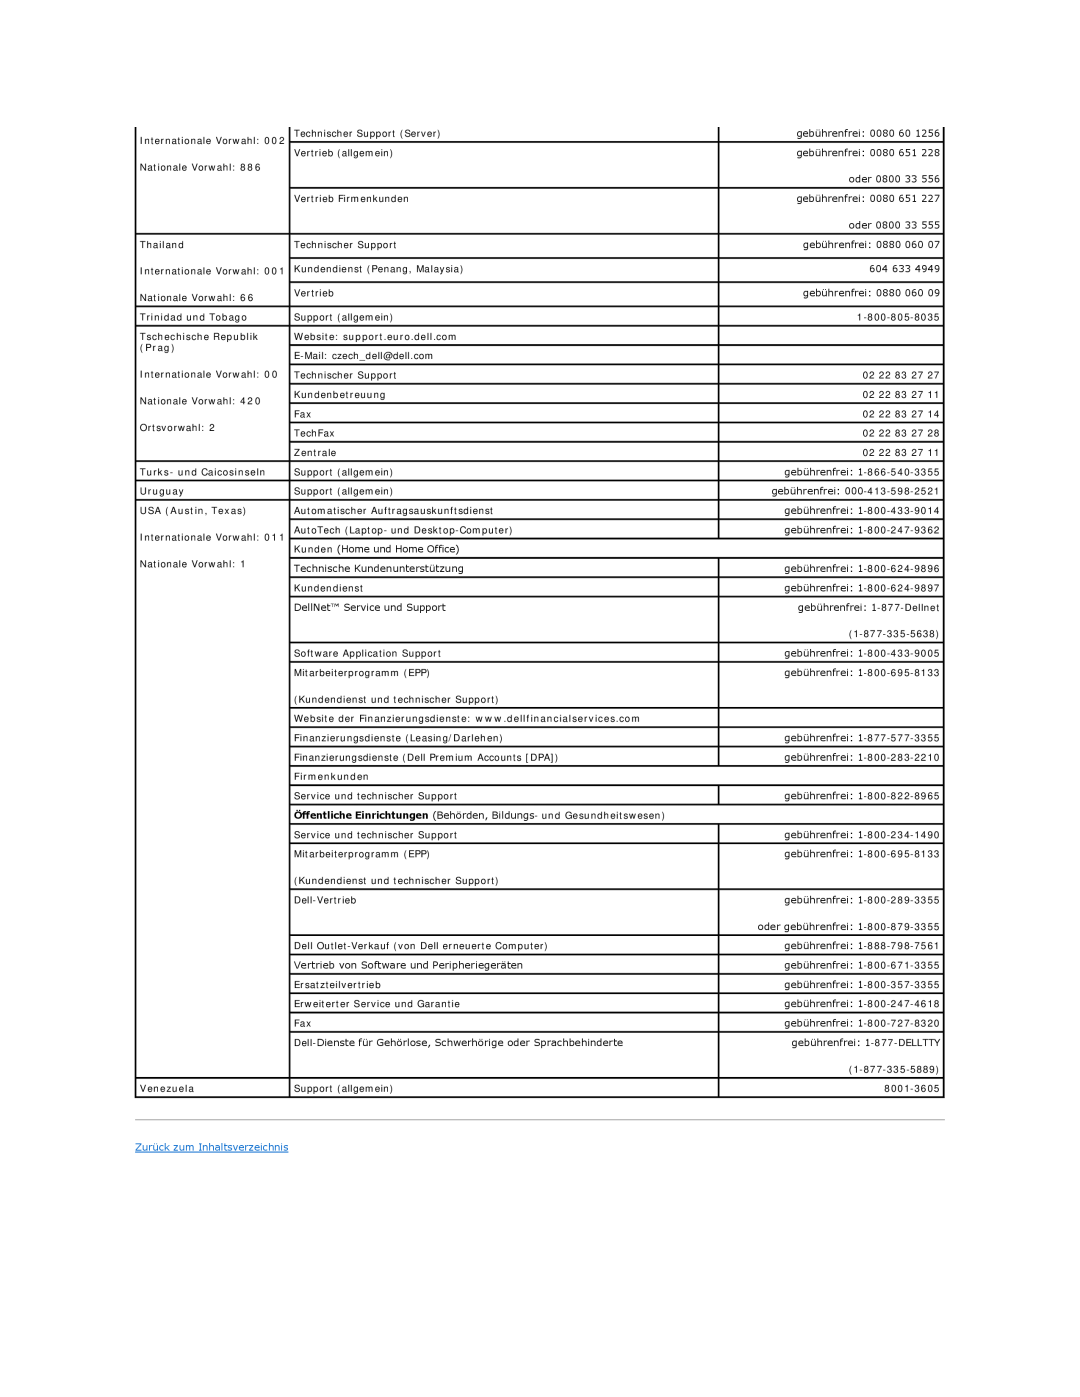 Dell 350 manual Thailand, Zurück zum Inhaltsverzeichnis 